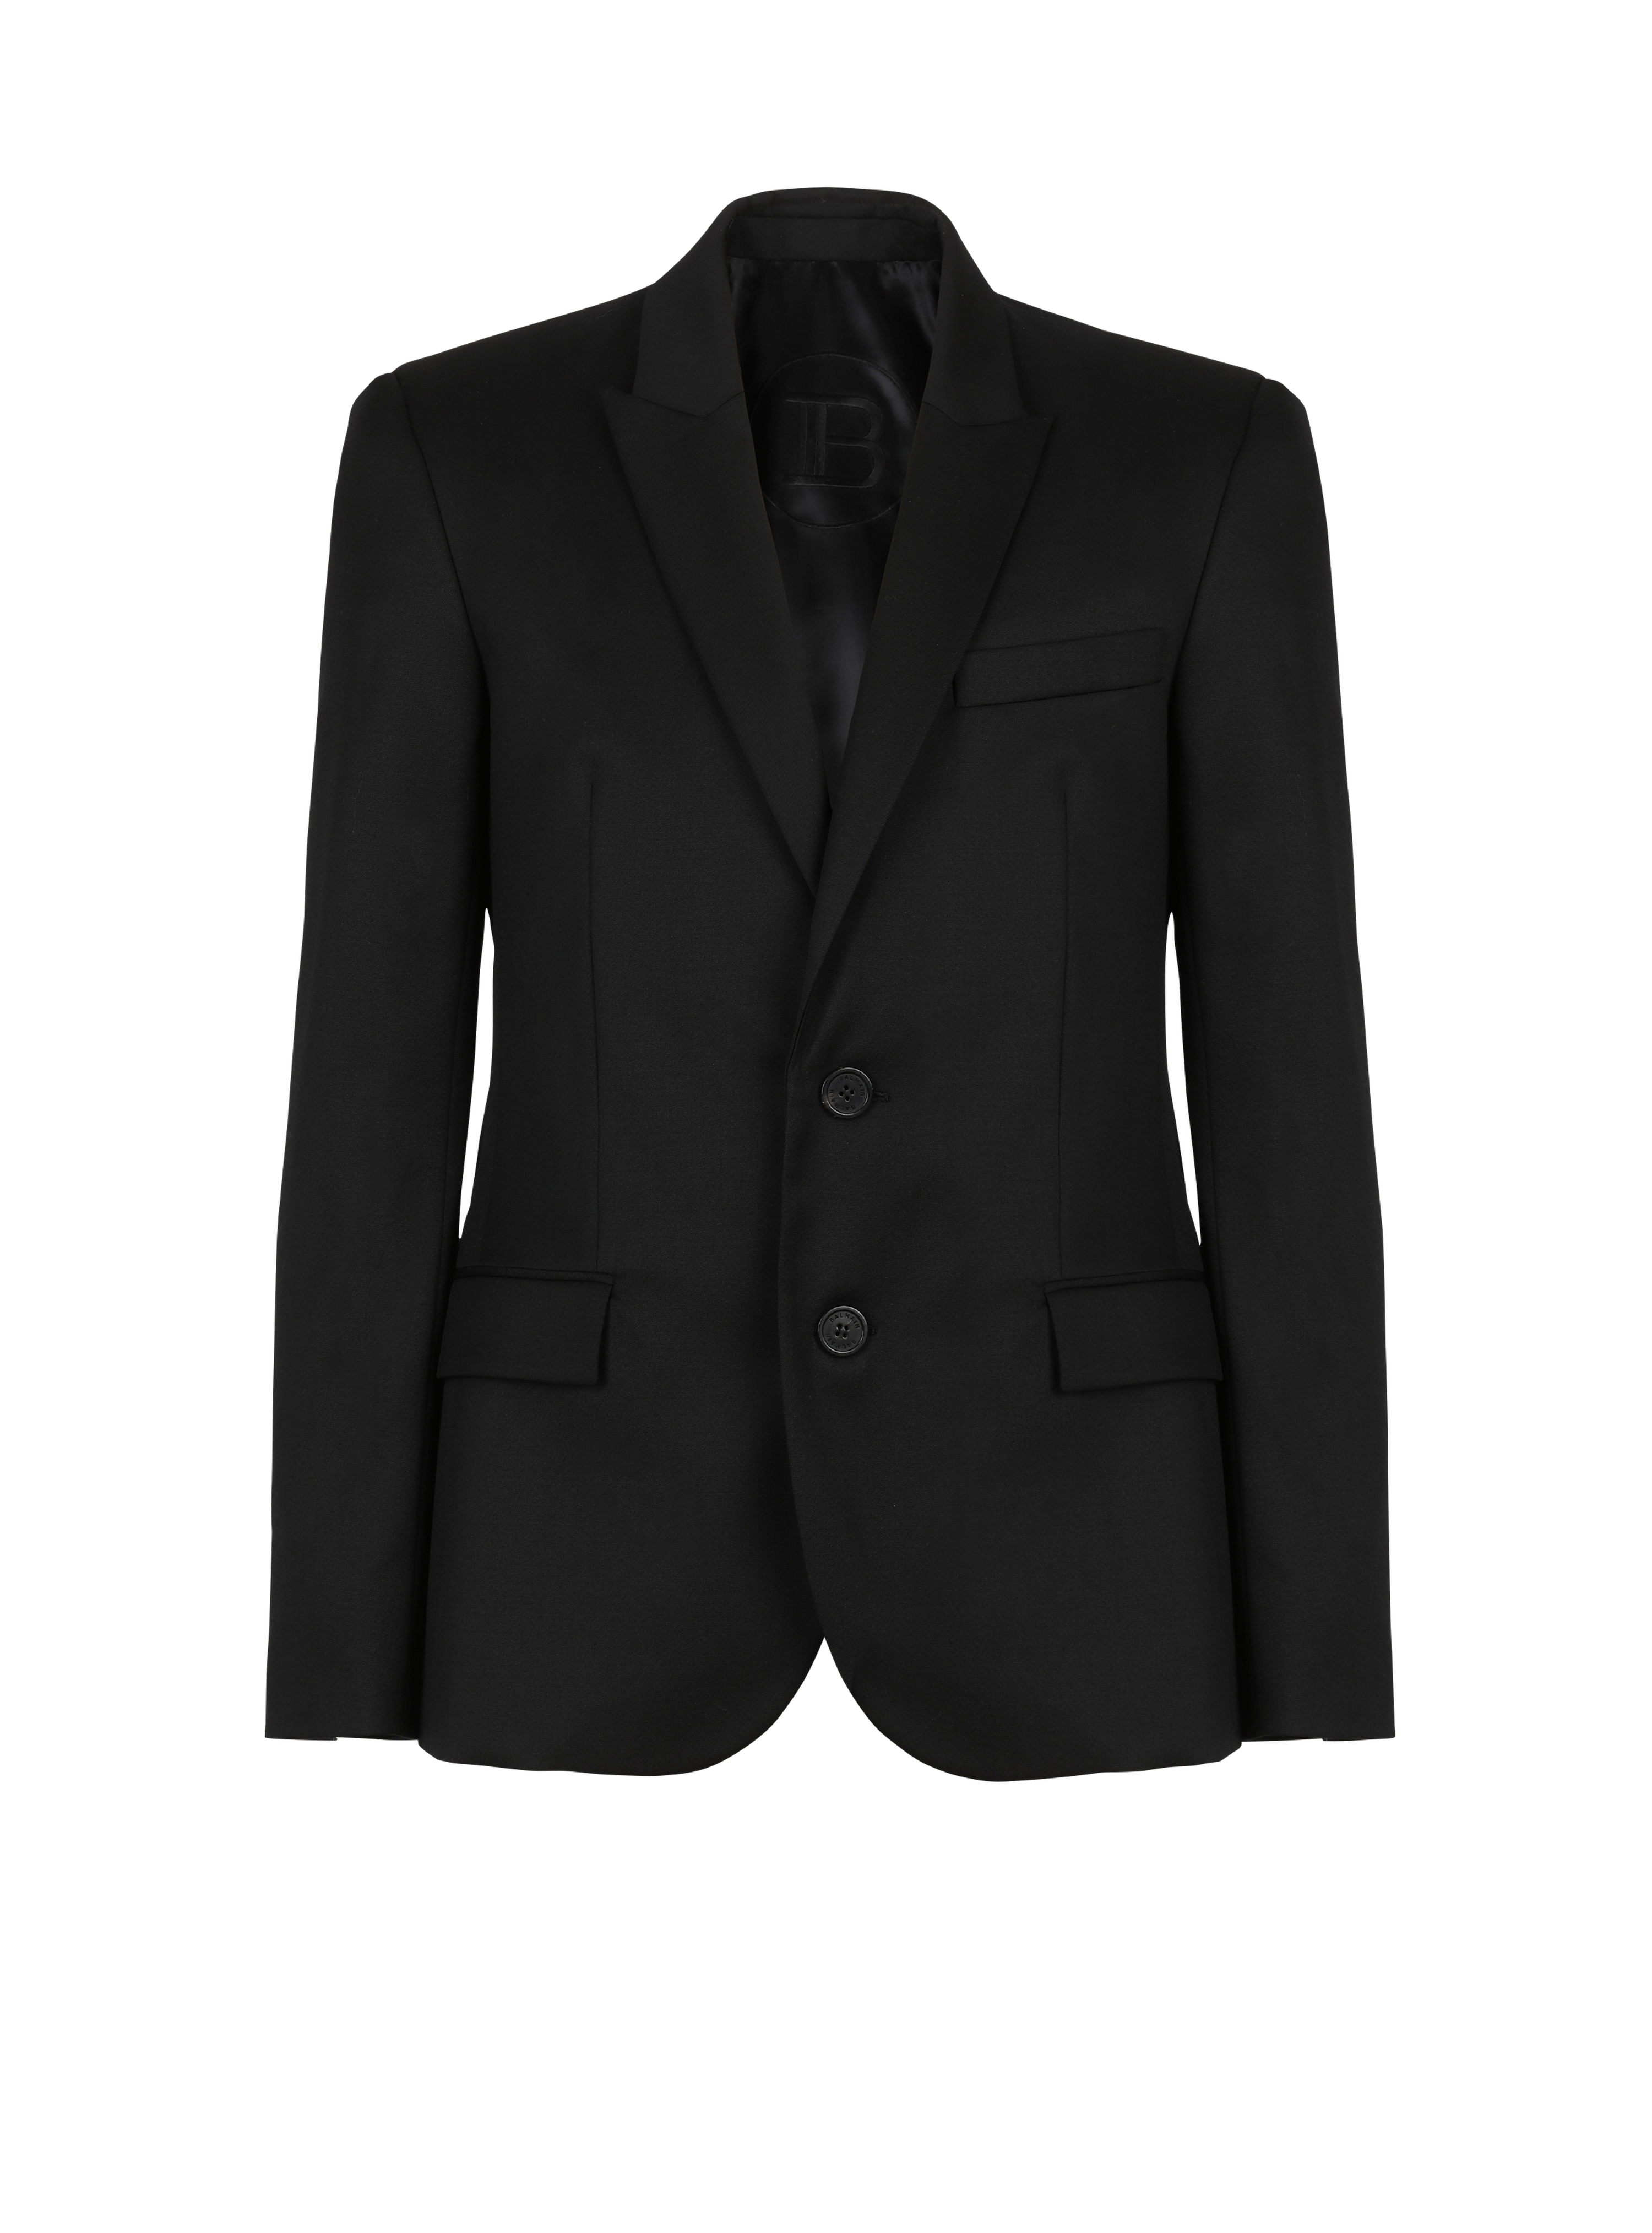 Two-button wool blazer , black